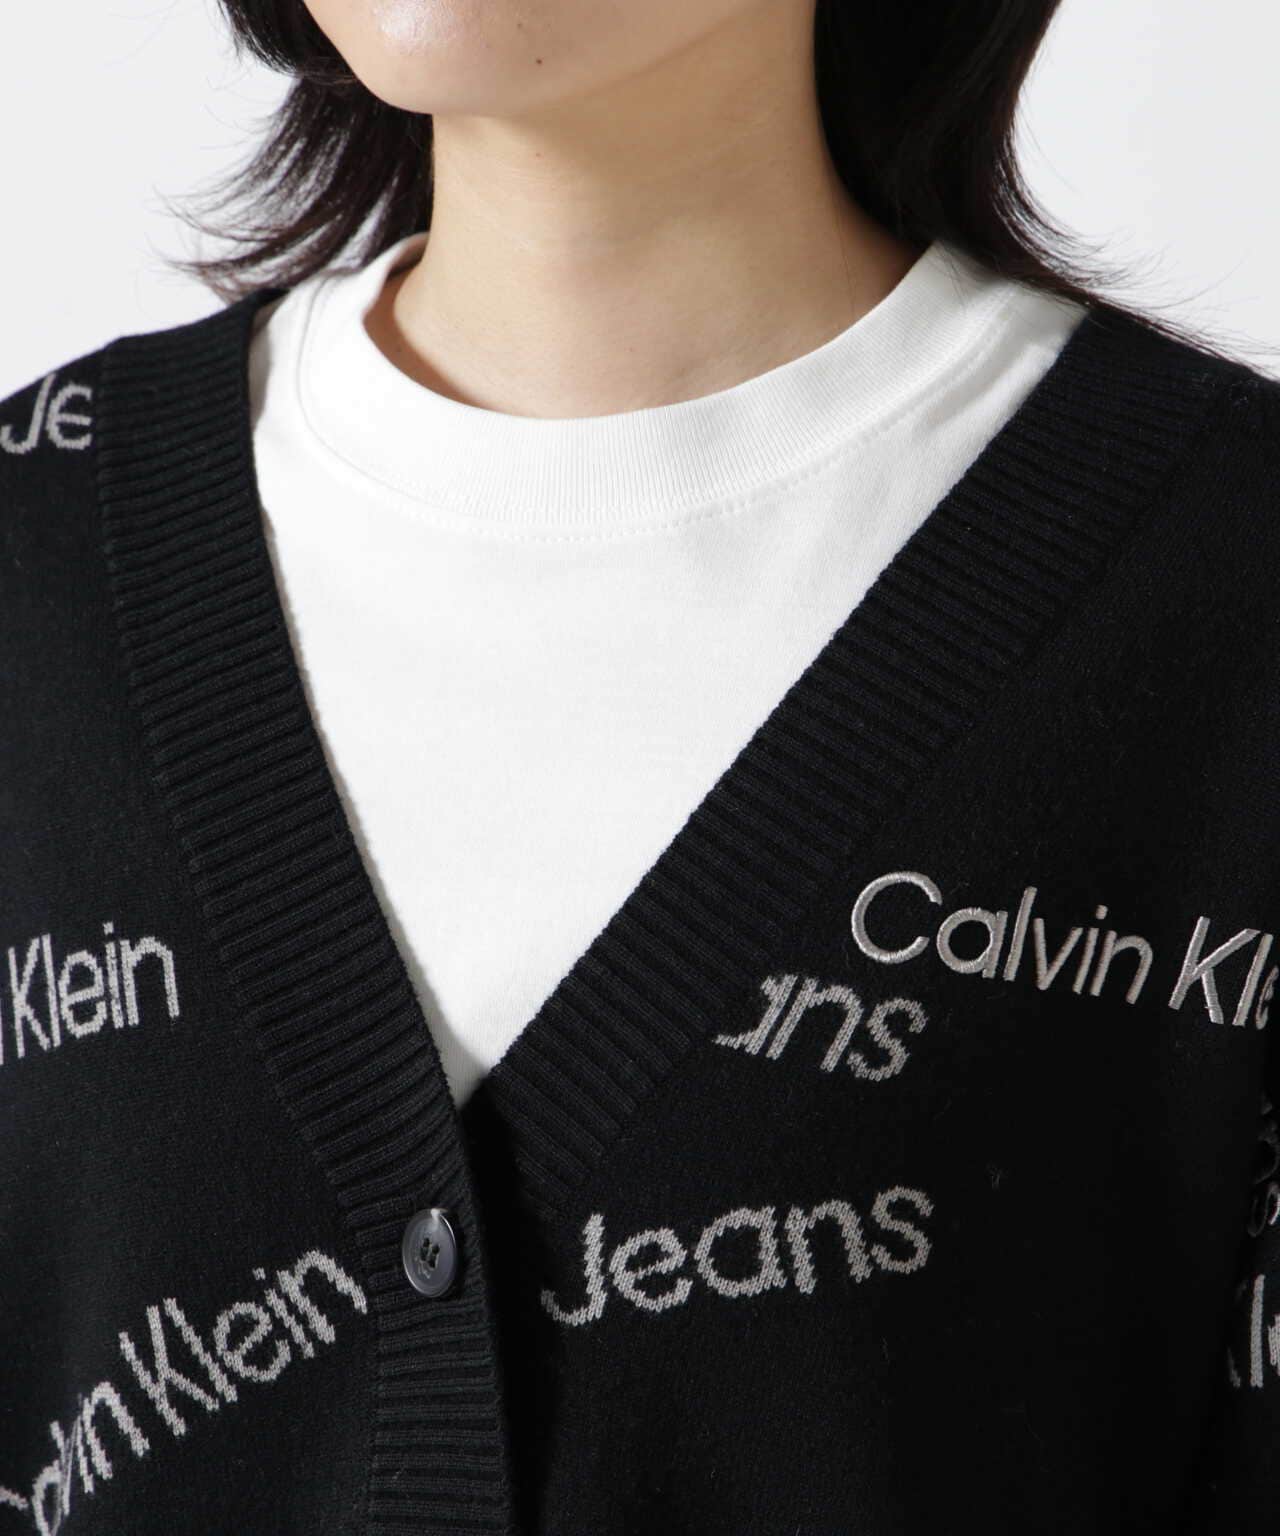 Calvin Klein Jeans（カルバンクラインジーンズ）オールオーバーロゴ 